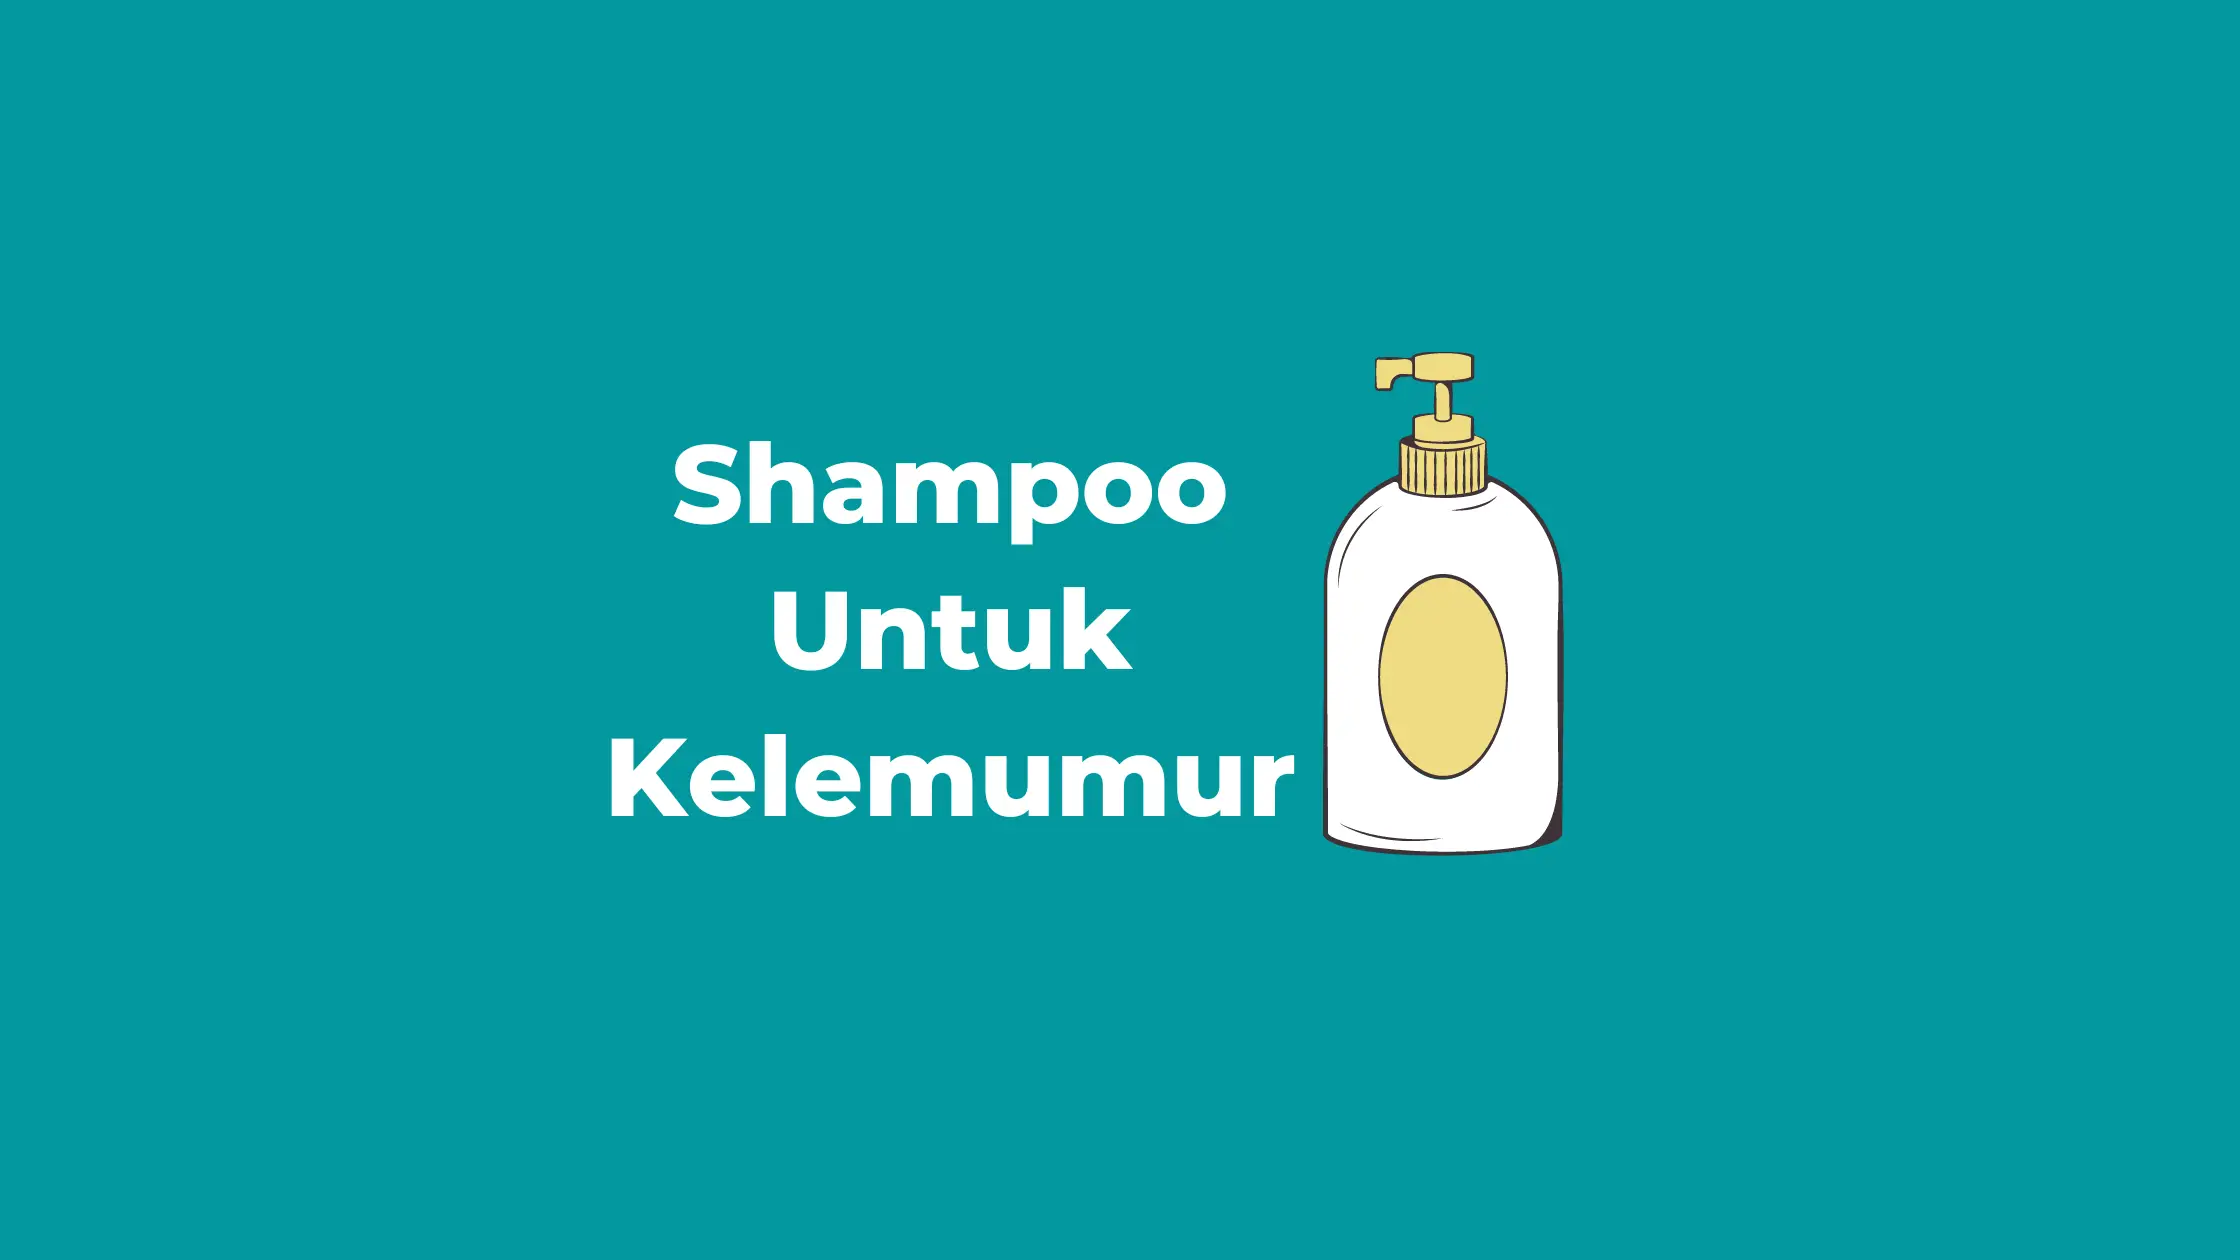 Shampoo Untuk Kelemumur